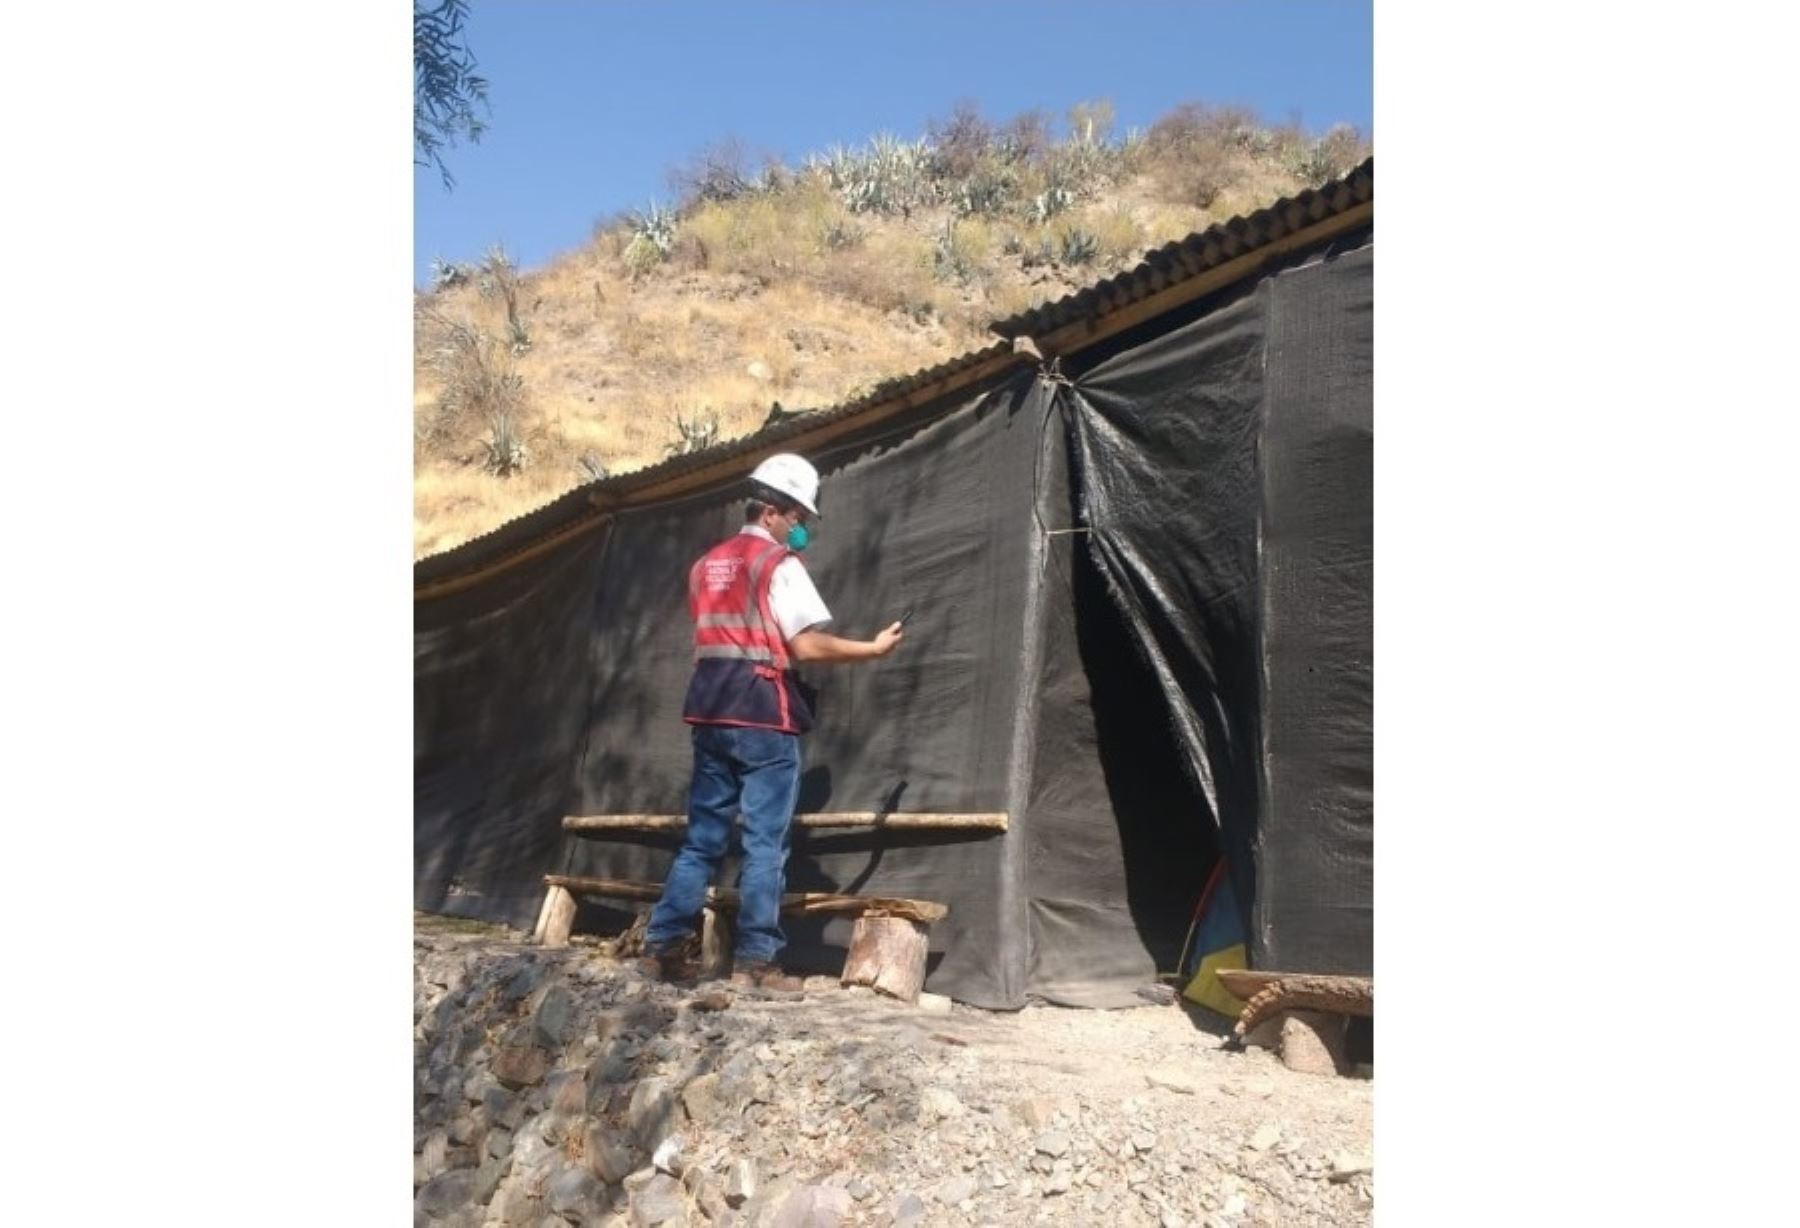 Sunafil investiga accidente laboral ocurrido en una empresa minera que opera en la provincia de Paucar del Sara Sara, en Ayacucho. ANDINA/Difusión